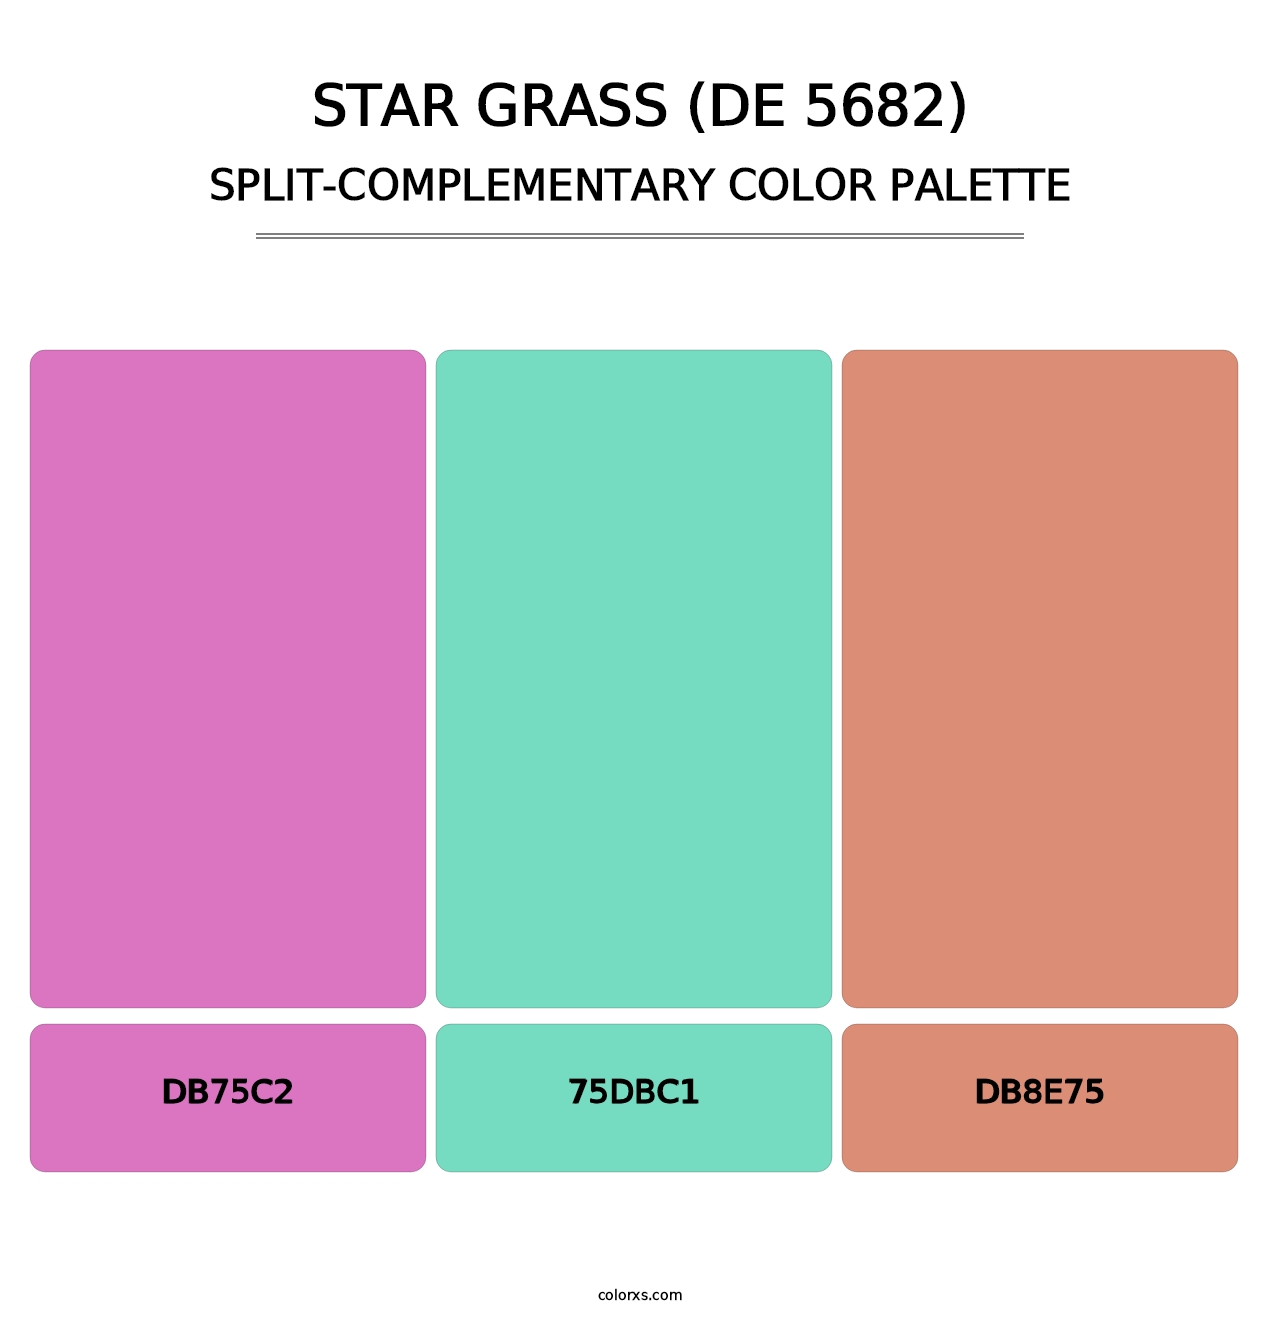 Star Grass (DE 5682) - Split-Complementary Color Palette